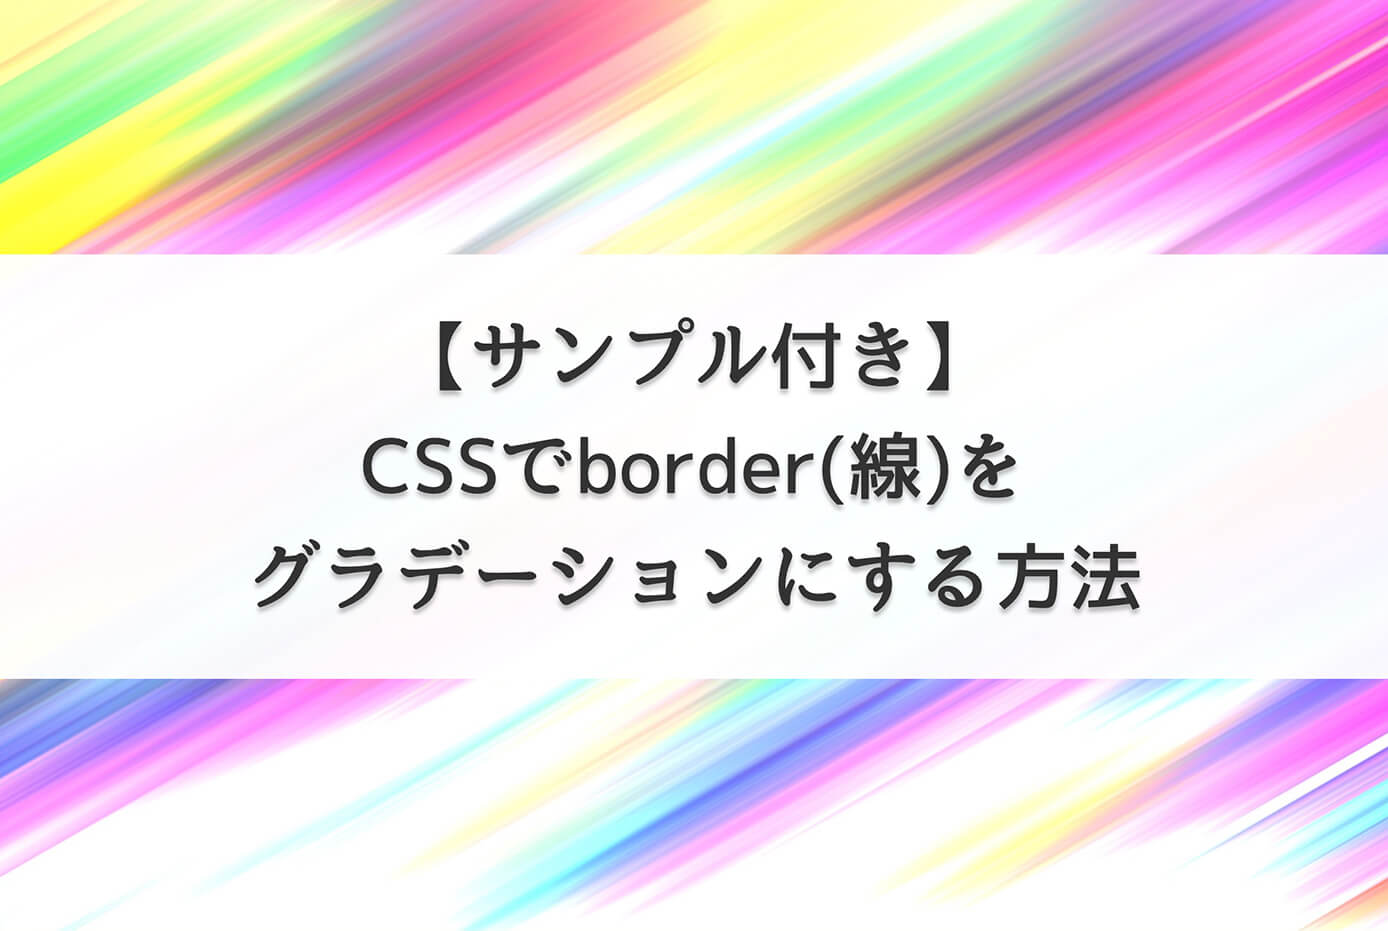 CSSでborder(線)をグラデーションにする方法【サンプル付き】